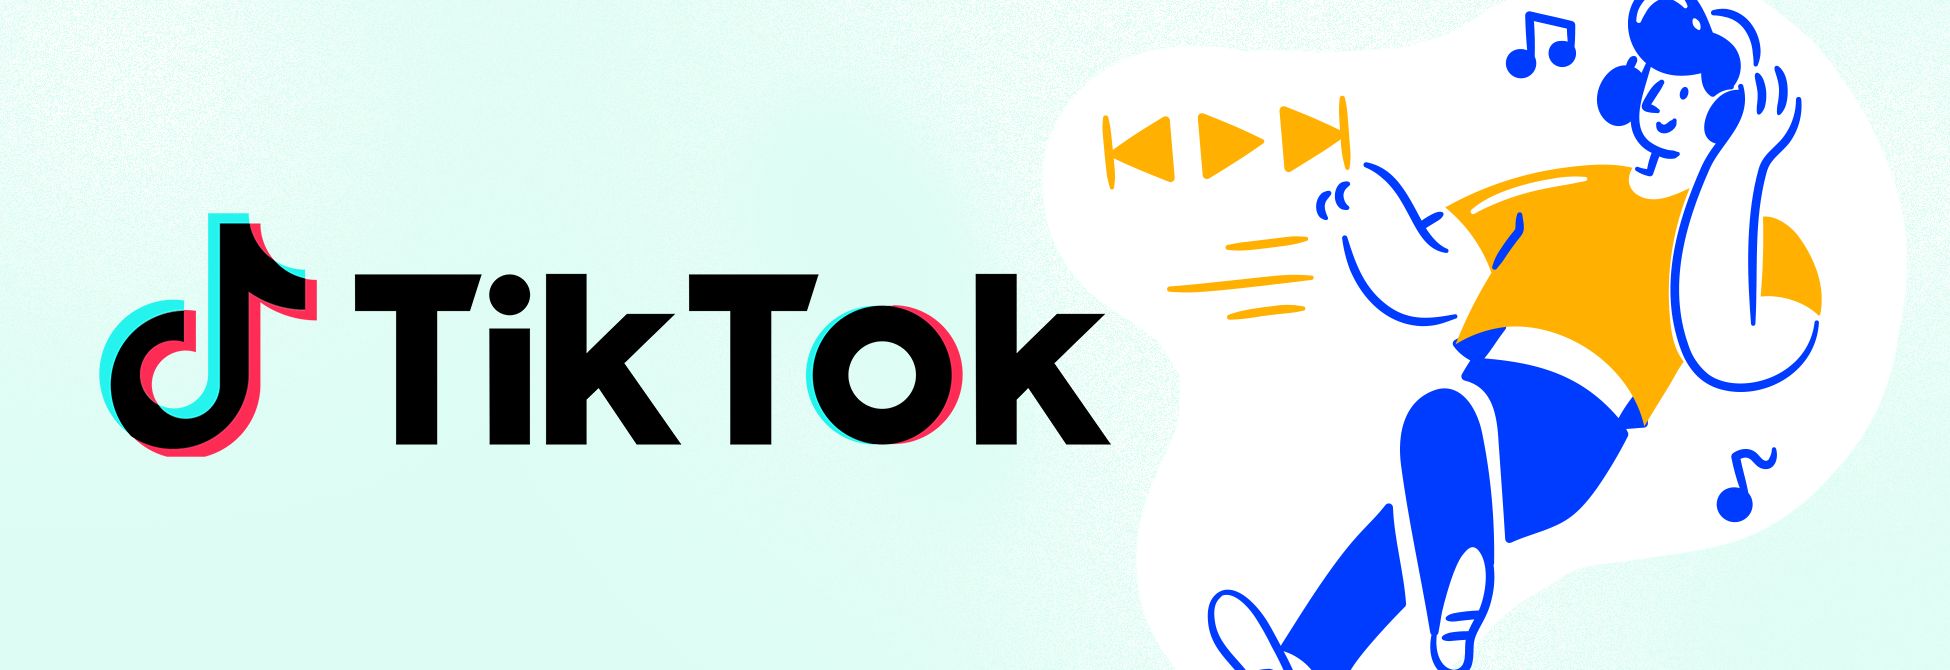 Comment devenir célèbre sur TikTok : notre guide pour les artistes indépendants | RightsNow!